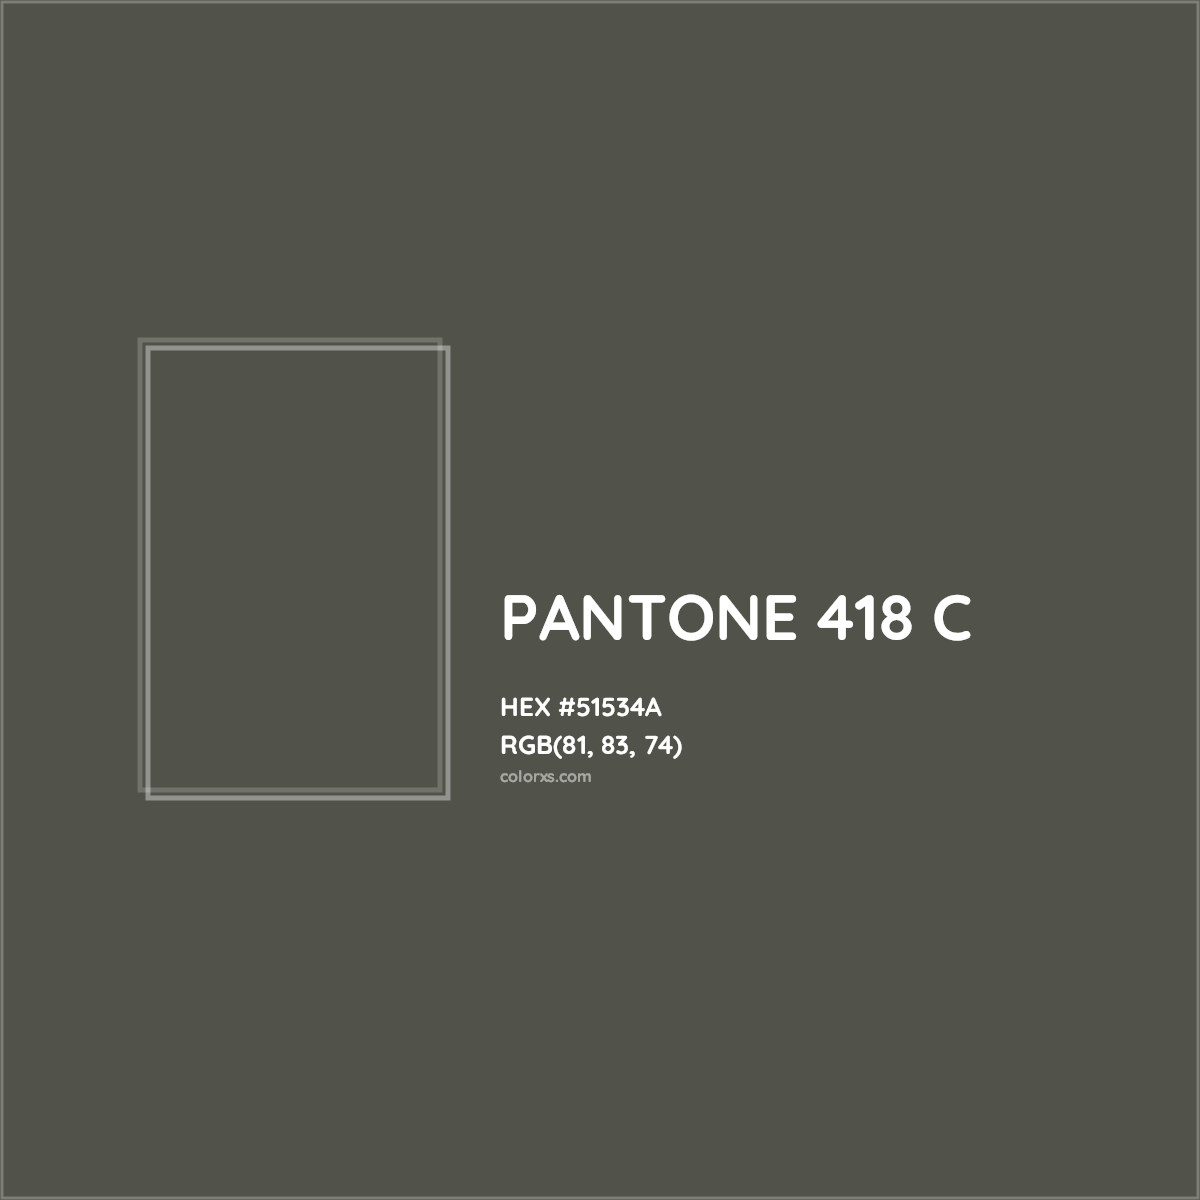 HEX #51534A PANTONE 418 C CMS Pantone PMS - Color Code